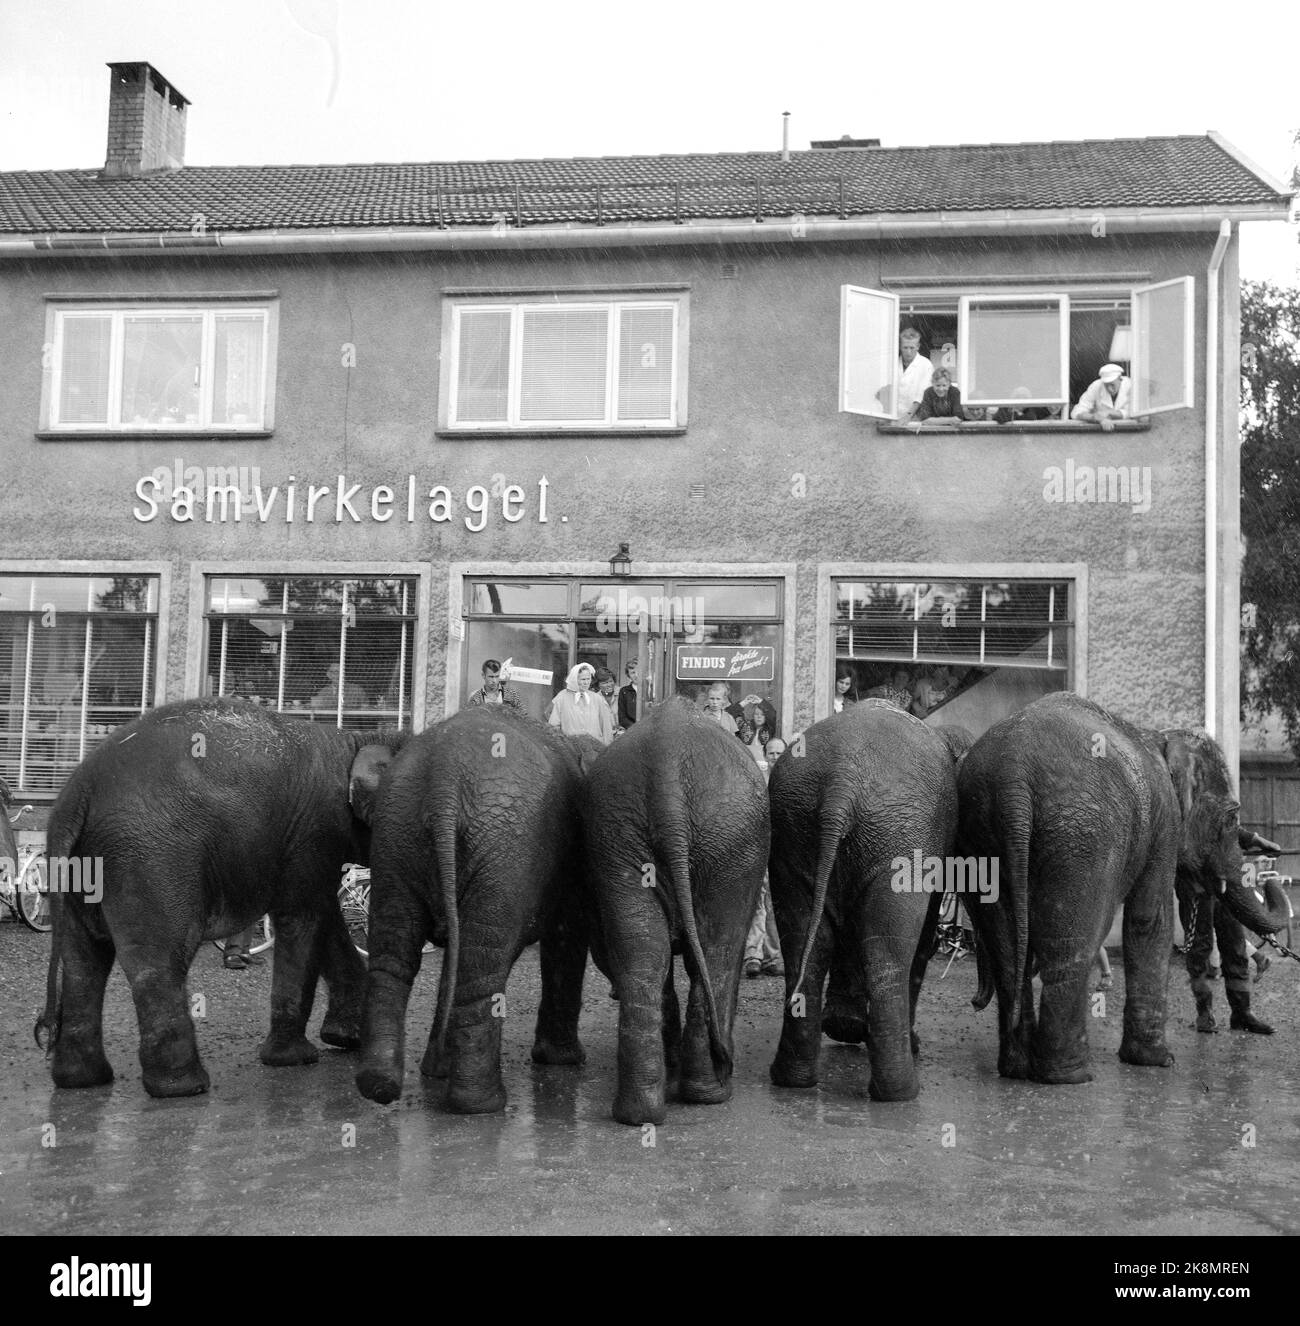 Sørlandet, sommeren 1962. Da elefantene kom til Evje: fire døgns slit for åtte minutters opptreden. Sirkus Arnardo er på turne på Sørlandet med fem to-tonns elefanter. Det byr på problemer. De sto i jernbanevogner i ett døgn på Marnardal stasjon fordi det ikke fantes biler som kunne ta dem videre. Dagen etter reiste de videre til Grovane stasjon hvor de skulle lastes om til den smalsporede Setesdalsbanen til Evje. Det var mislykket, og først etter fire døgn kom elefantene til Evje pr trailere, der forestillingen allerede var i gang.   Her elefantene  på Evje, dagen etter forestilling, der de f Stock Photo